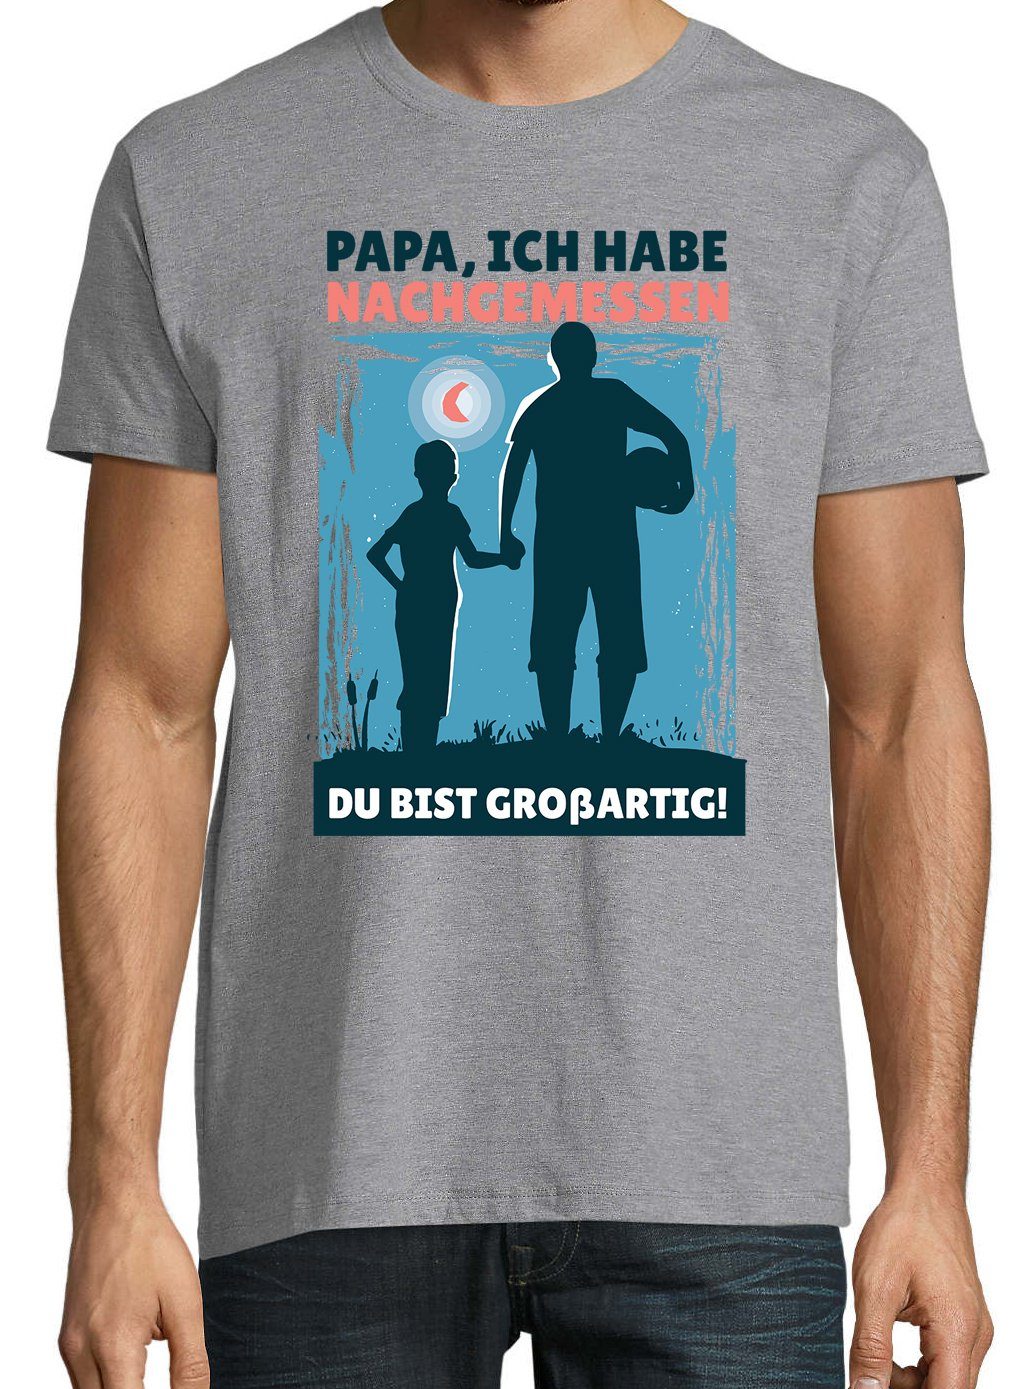 Youth Designz T-Shirt "Papa, Großartig" Herren Du Shirt Bist Grau trenidgem Frontprint mit